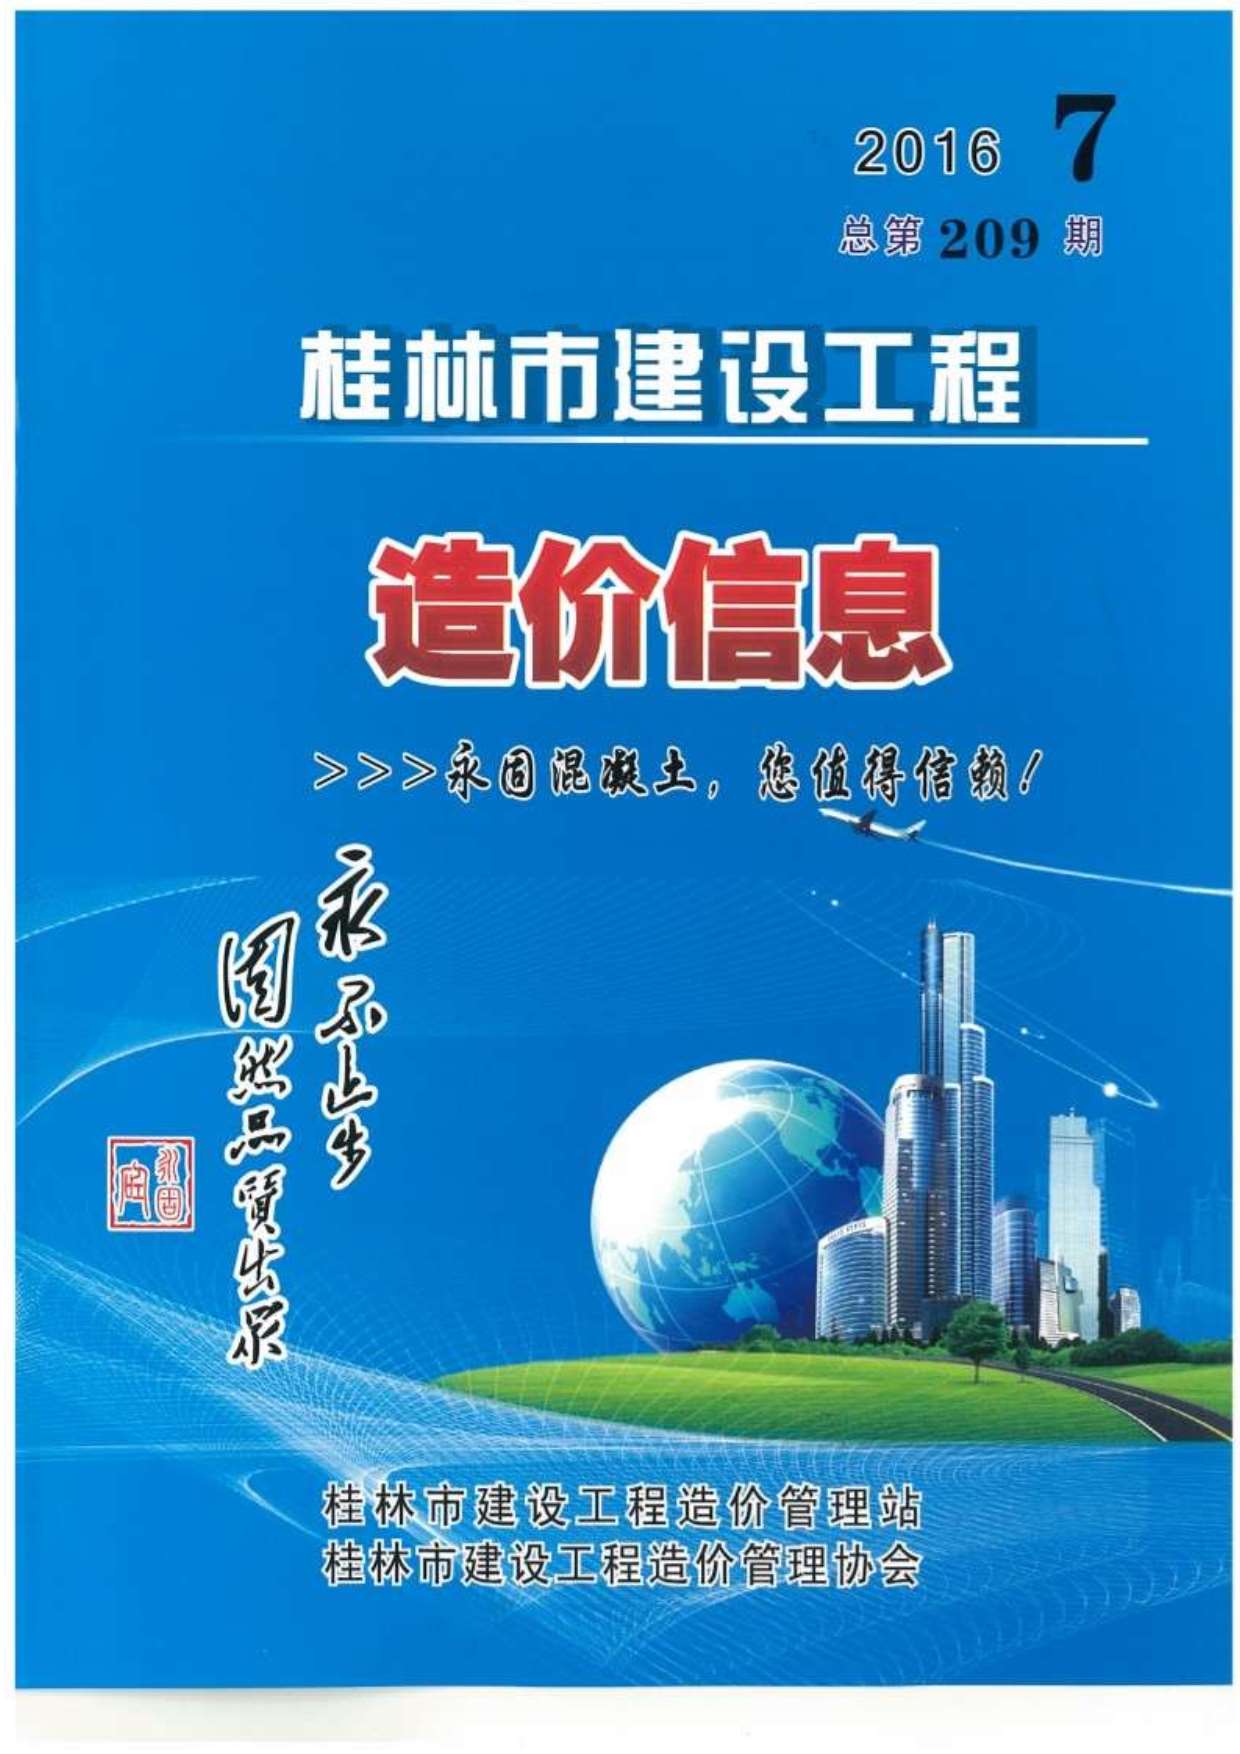 桂林市2016年7月建设工程造价信息